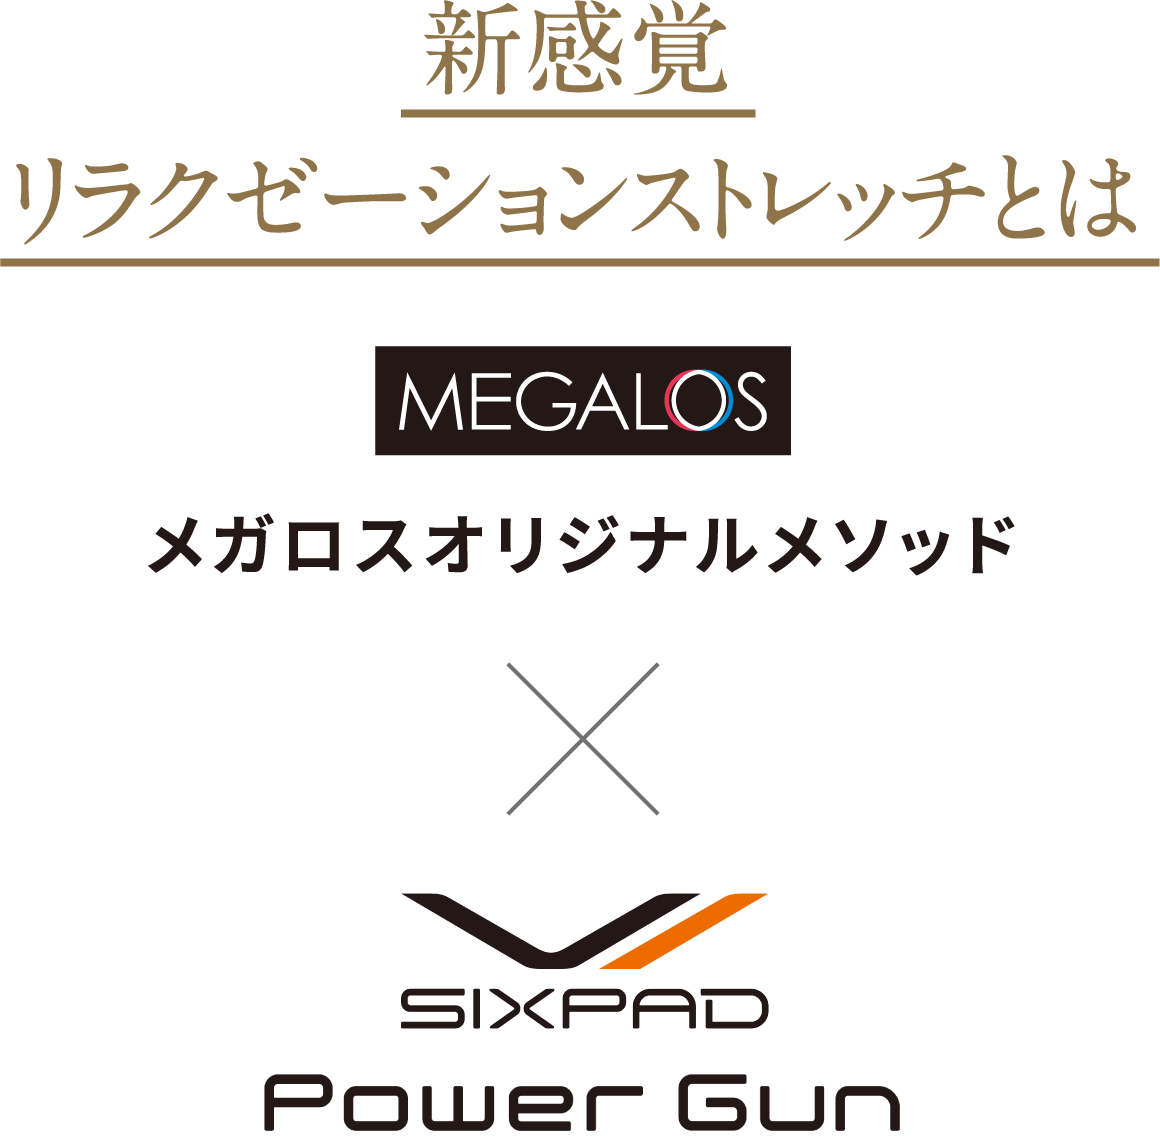 新感覚リラクゼーションストレッチ メガロスオリジナルメソッド×SIXPAD Power Gun